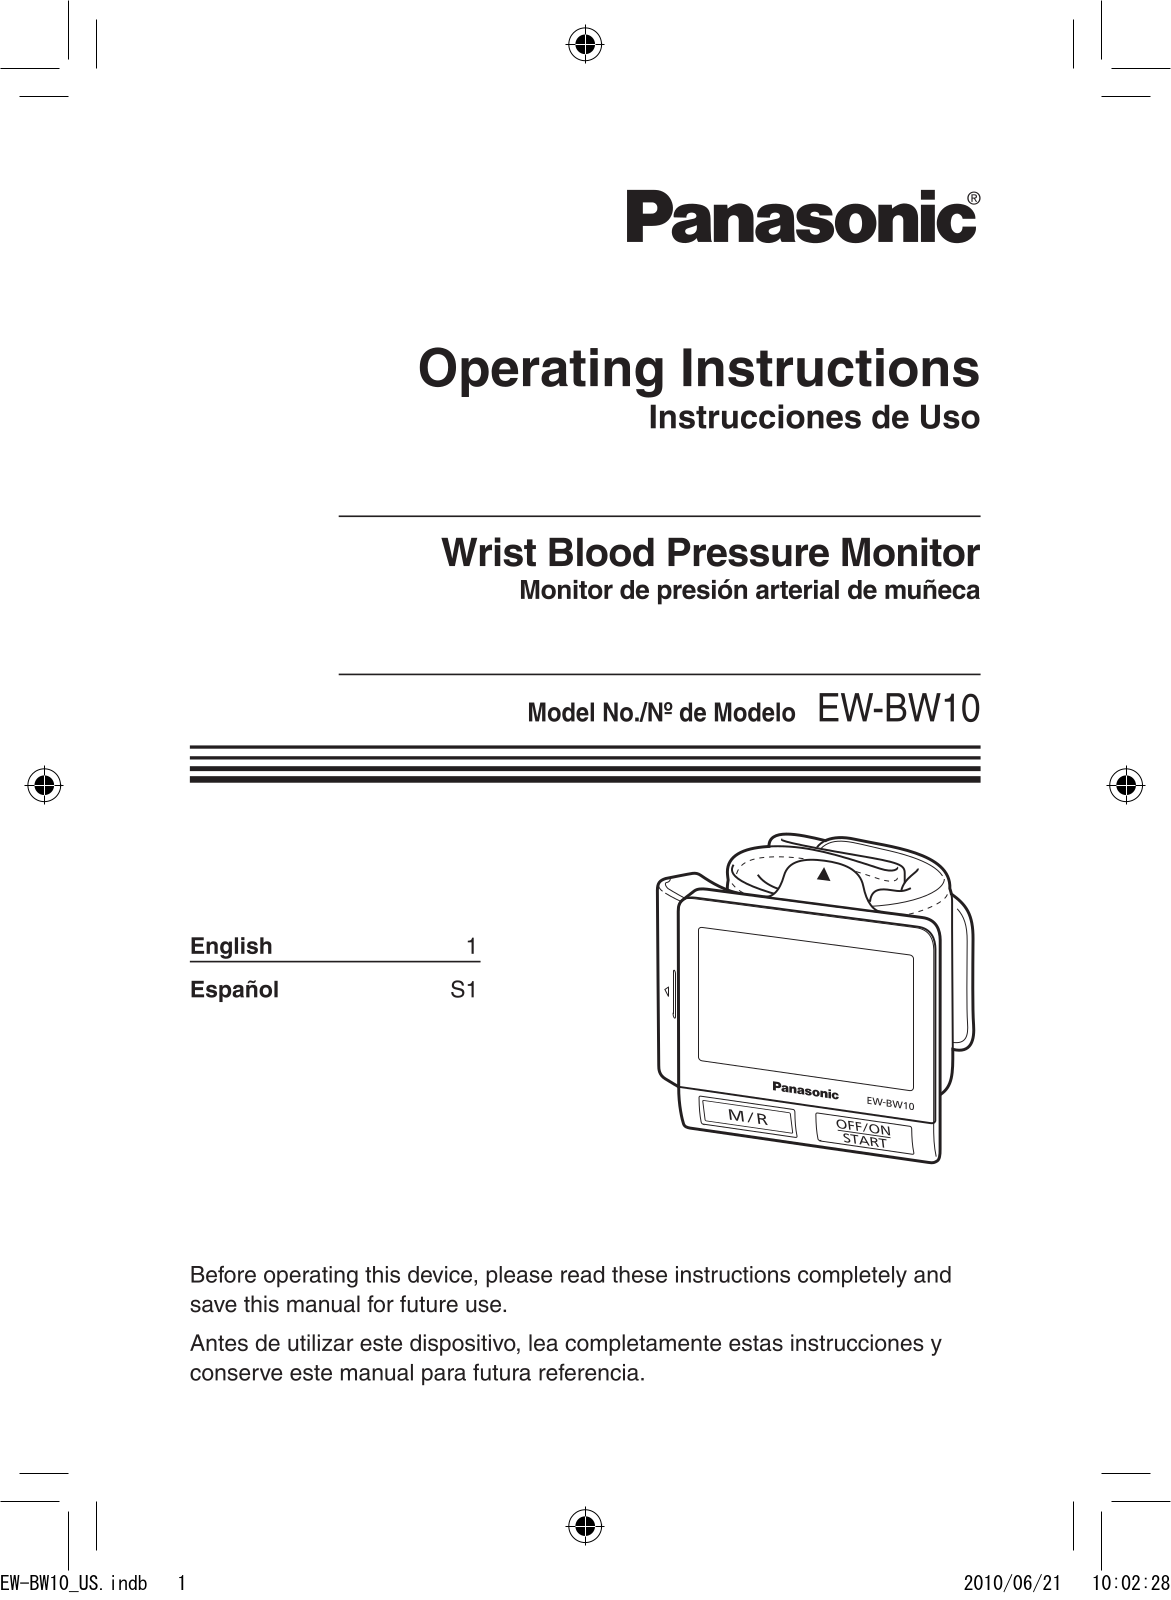 Panasonic ew-bw10 Operation Manual